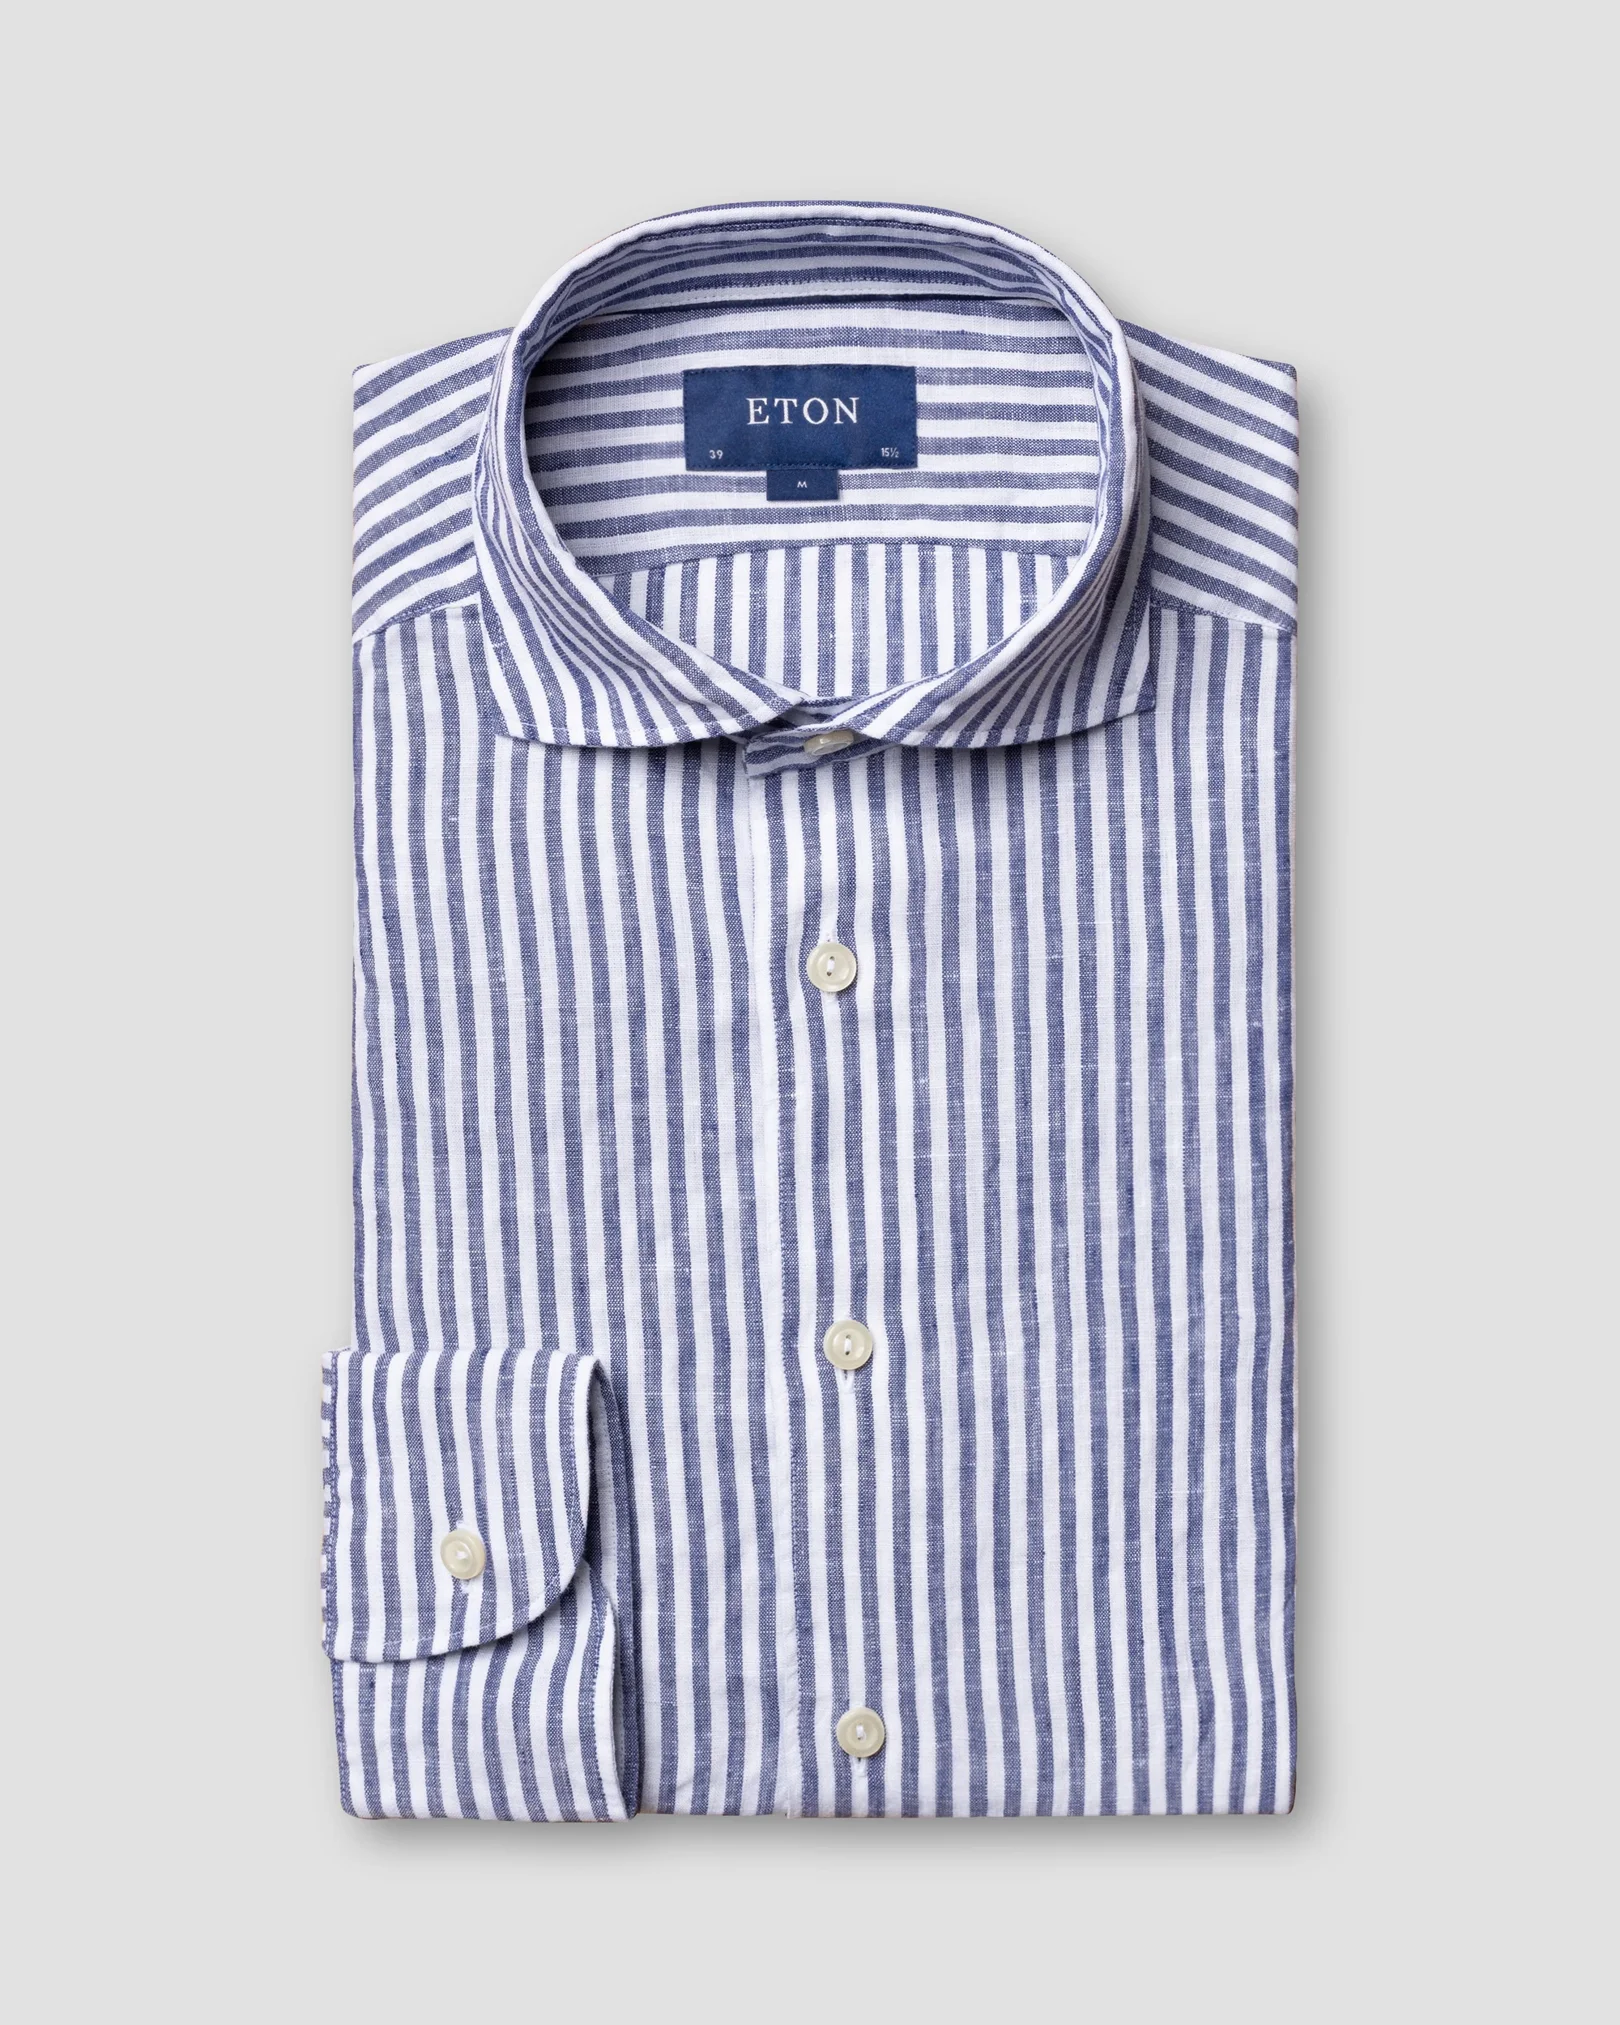 Eton - blue striped linen shirt wide spread